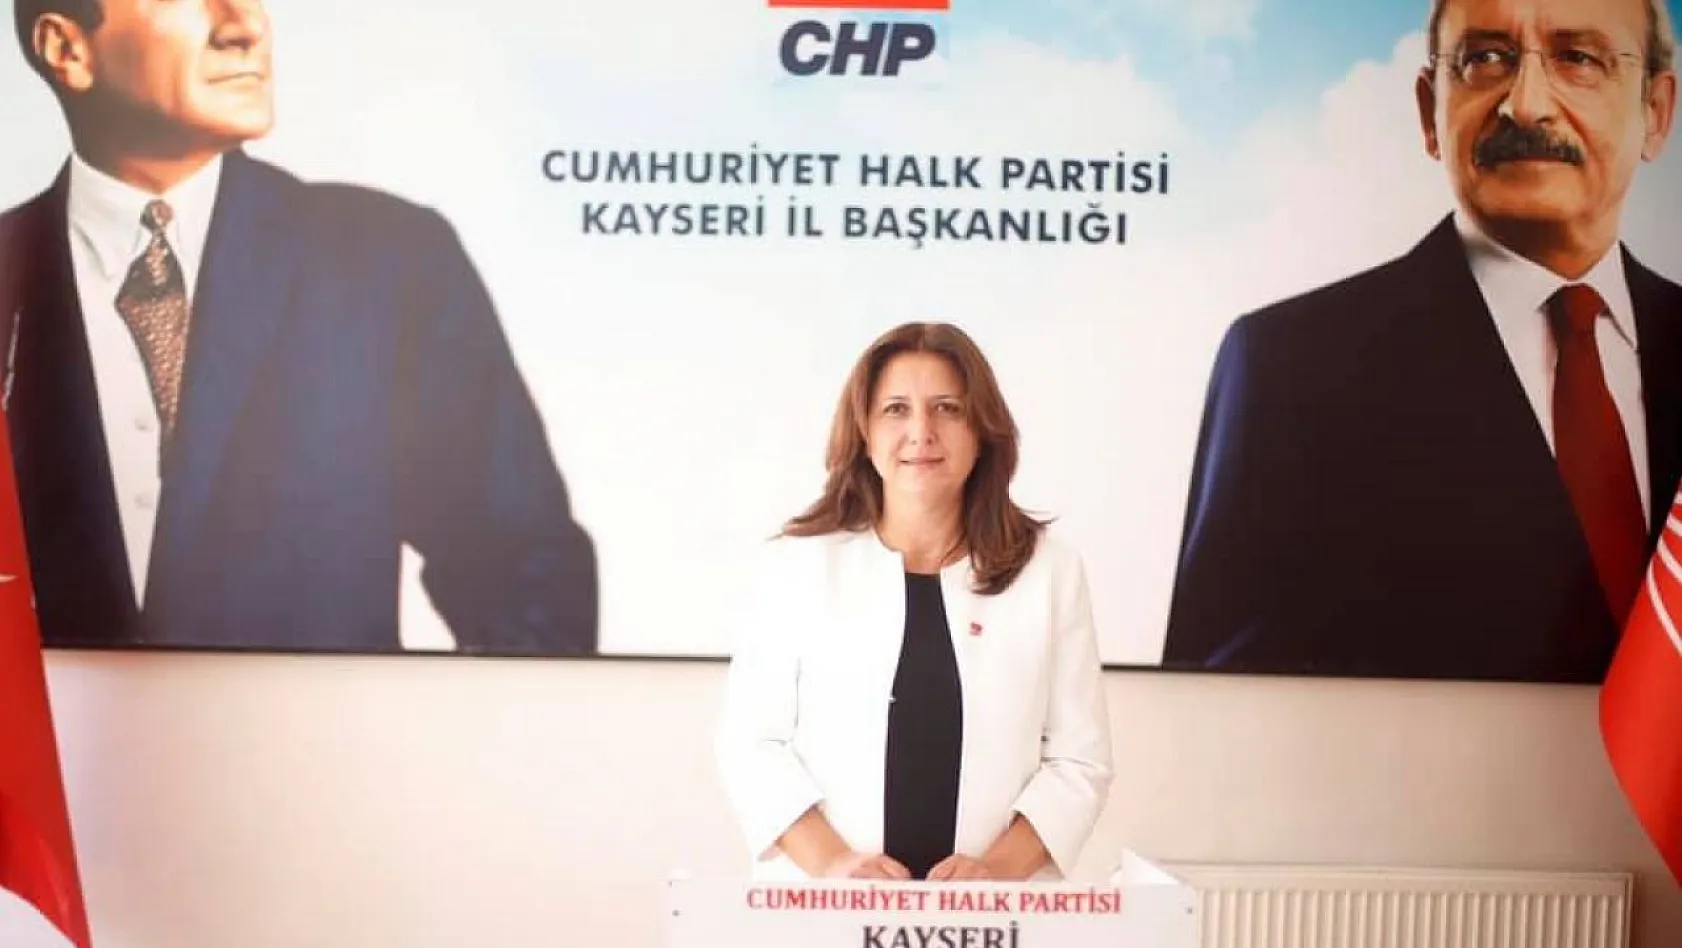 CHP'den 'Habersiz üyelik' tepkisi: Bu skandal sadece Kayseri'de değil, her yerde var!